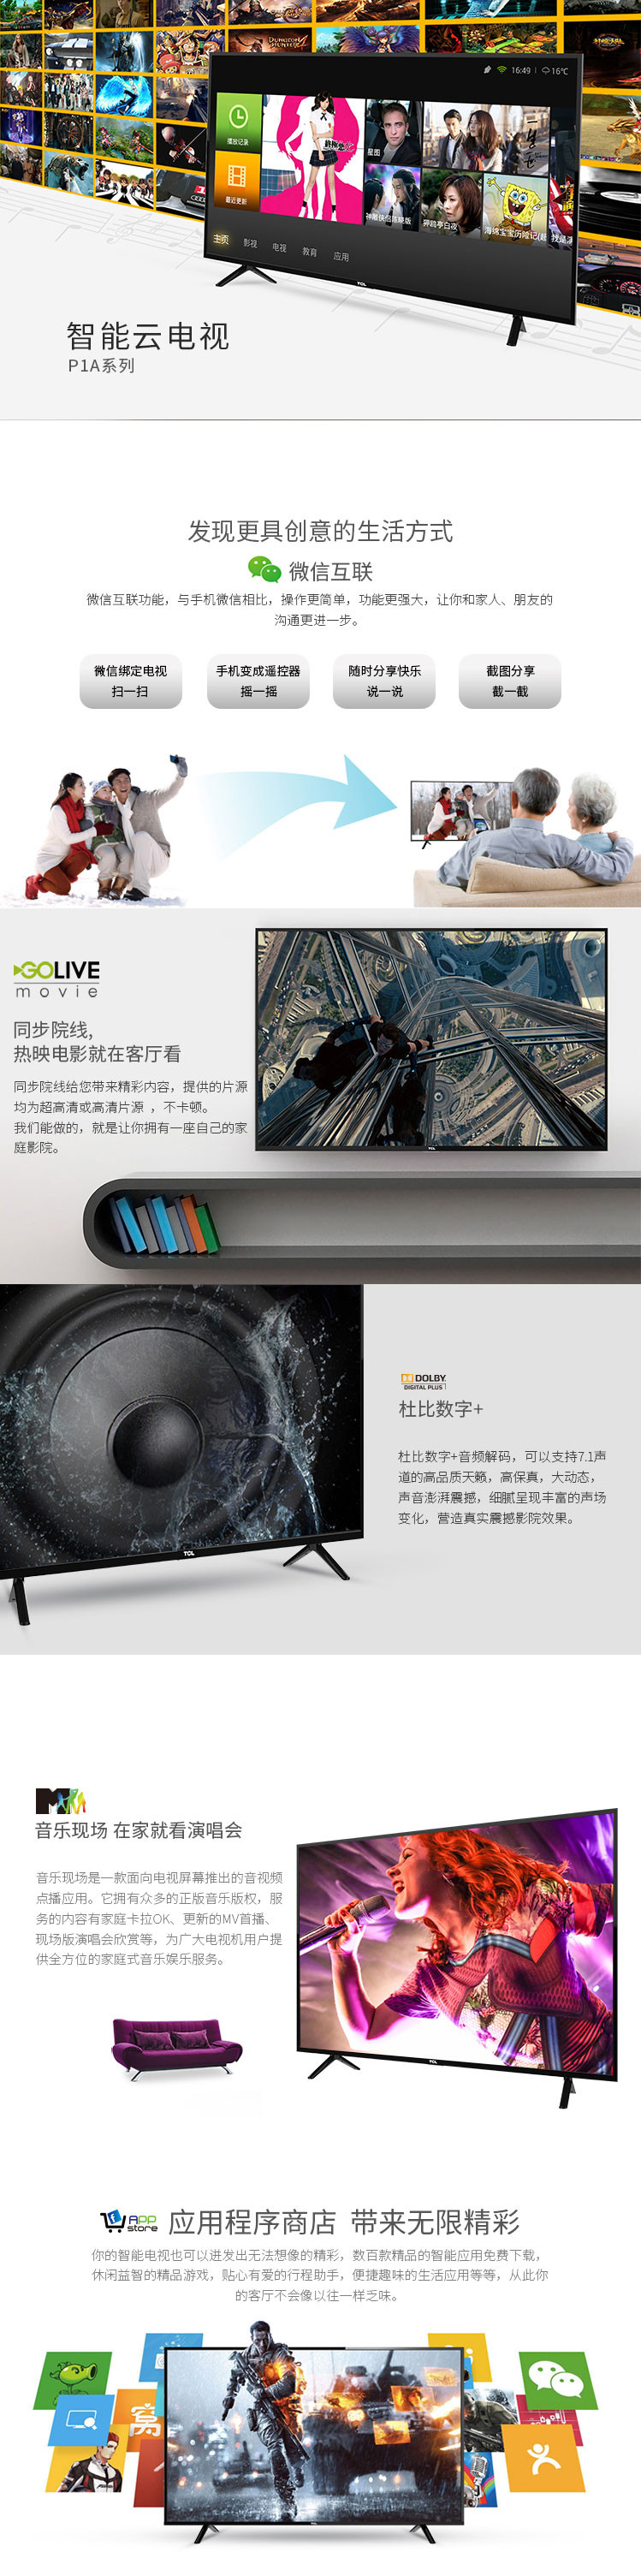 【仅限新乡地区销售】TCL40英寸全高清智能网络LED电视  WIFI黑色窄边L40P1A-F